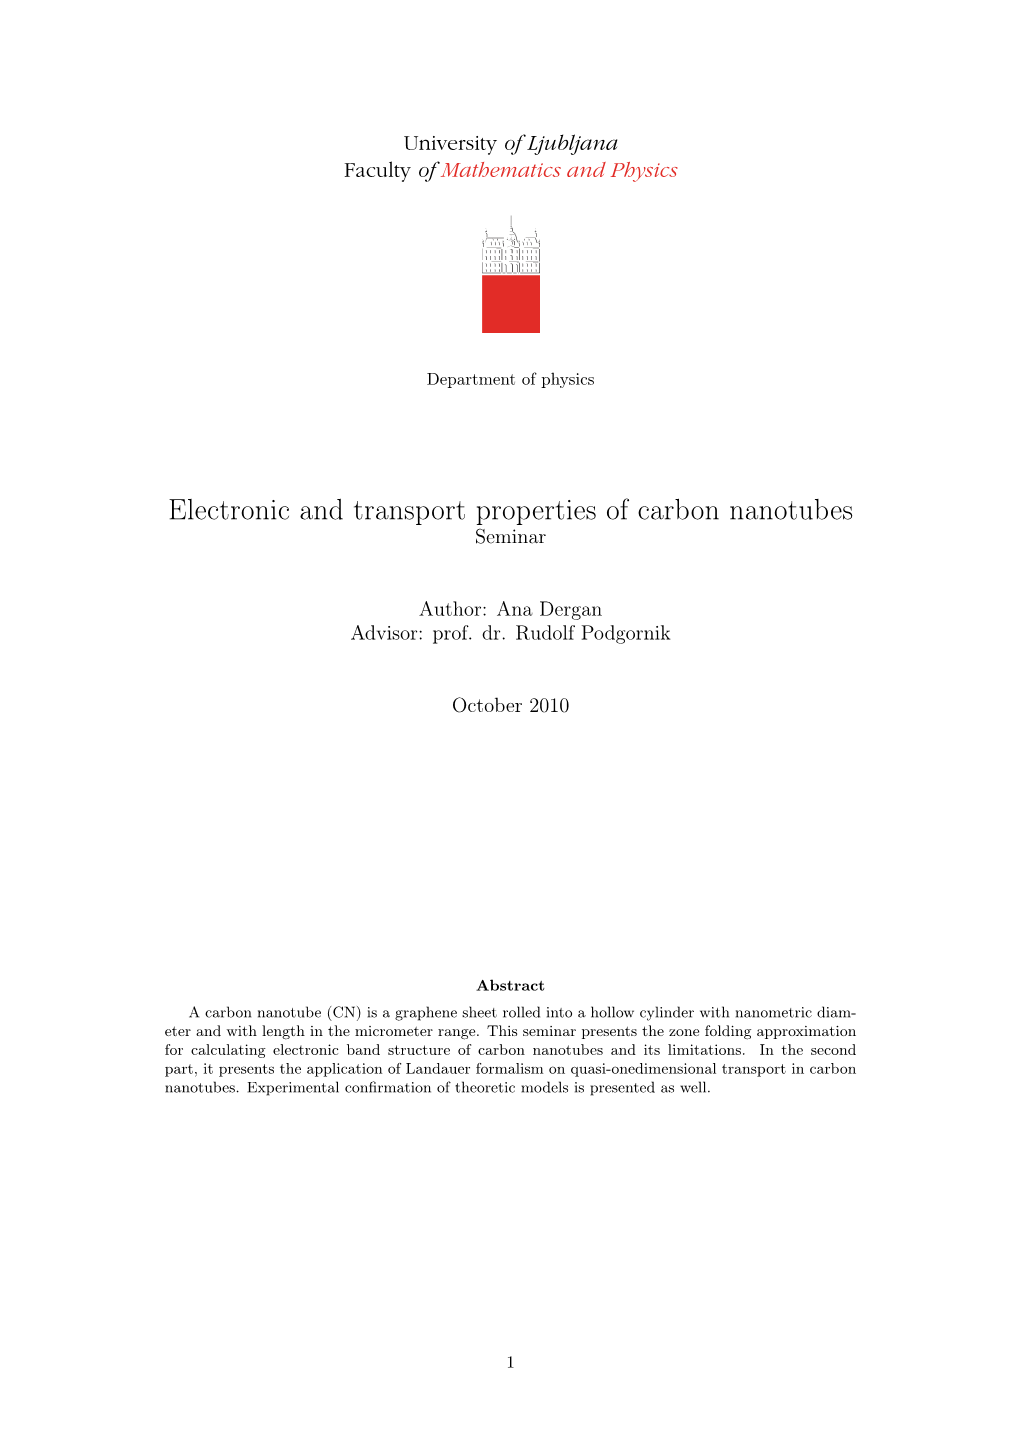 Electronic and Transport Properties of Carbon Nanotubes Seminar